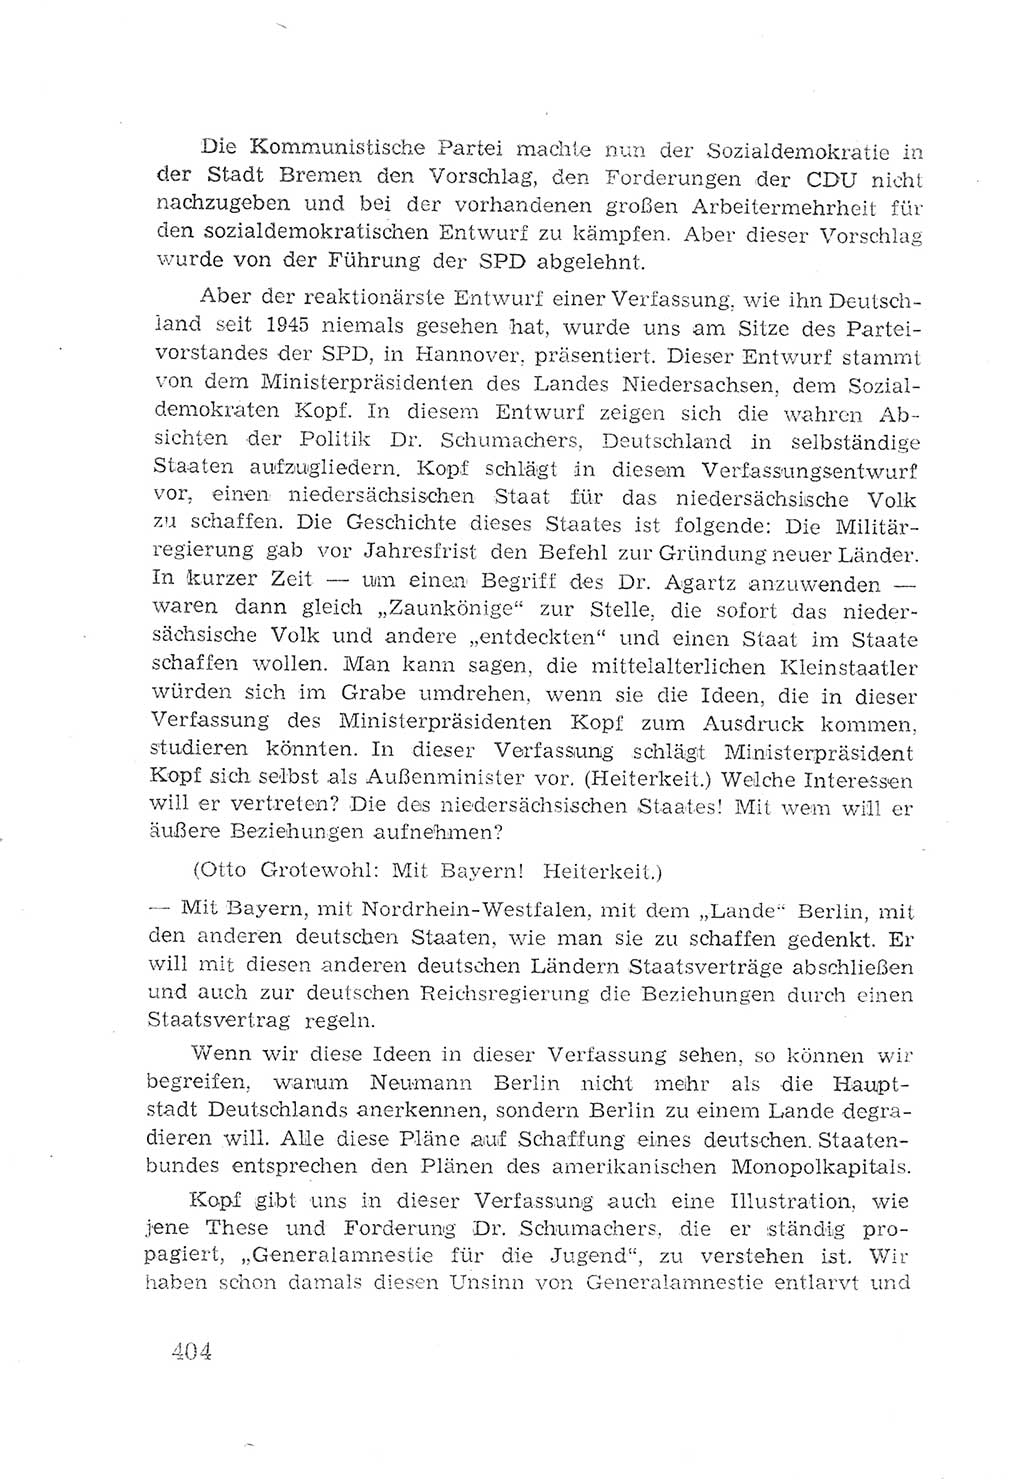 Protokoll der Verhandlungen des 2. Parteitages der Sozialistischen Einheitspartei Deutschlands (SED) [Sowjetische Besatzungszone (SBZ) Deutschlands] 1947, Seite 404 (Prot. Verh. 2. PT SED SBZ Dtl. 1947, S. 404)